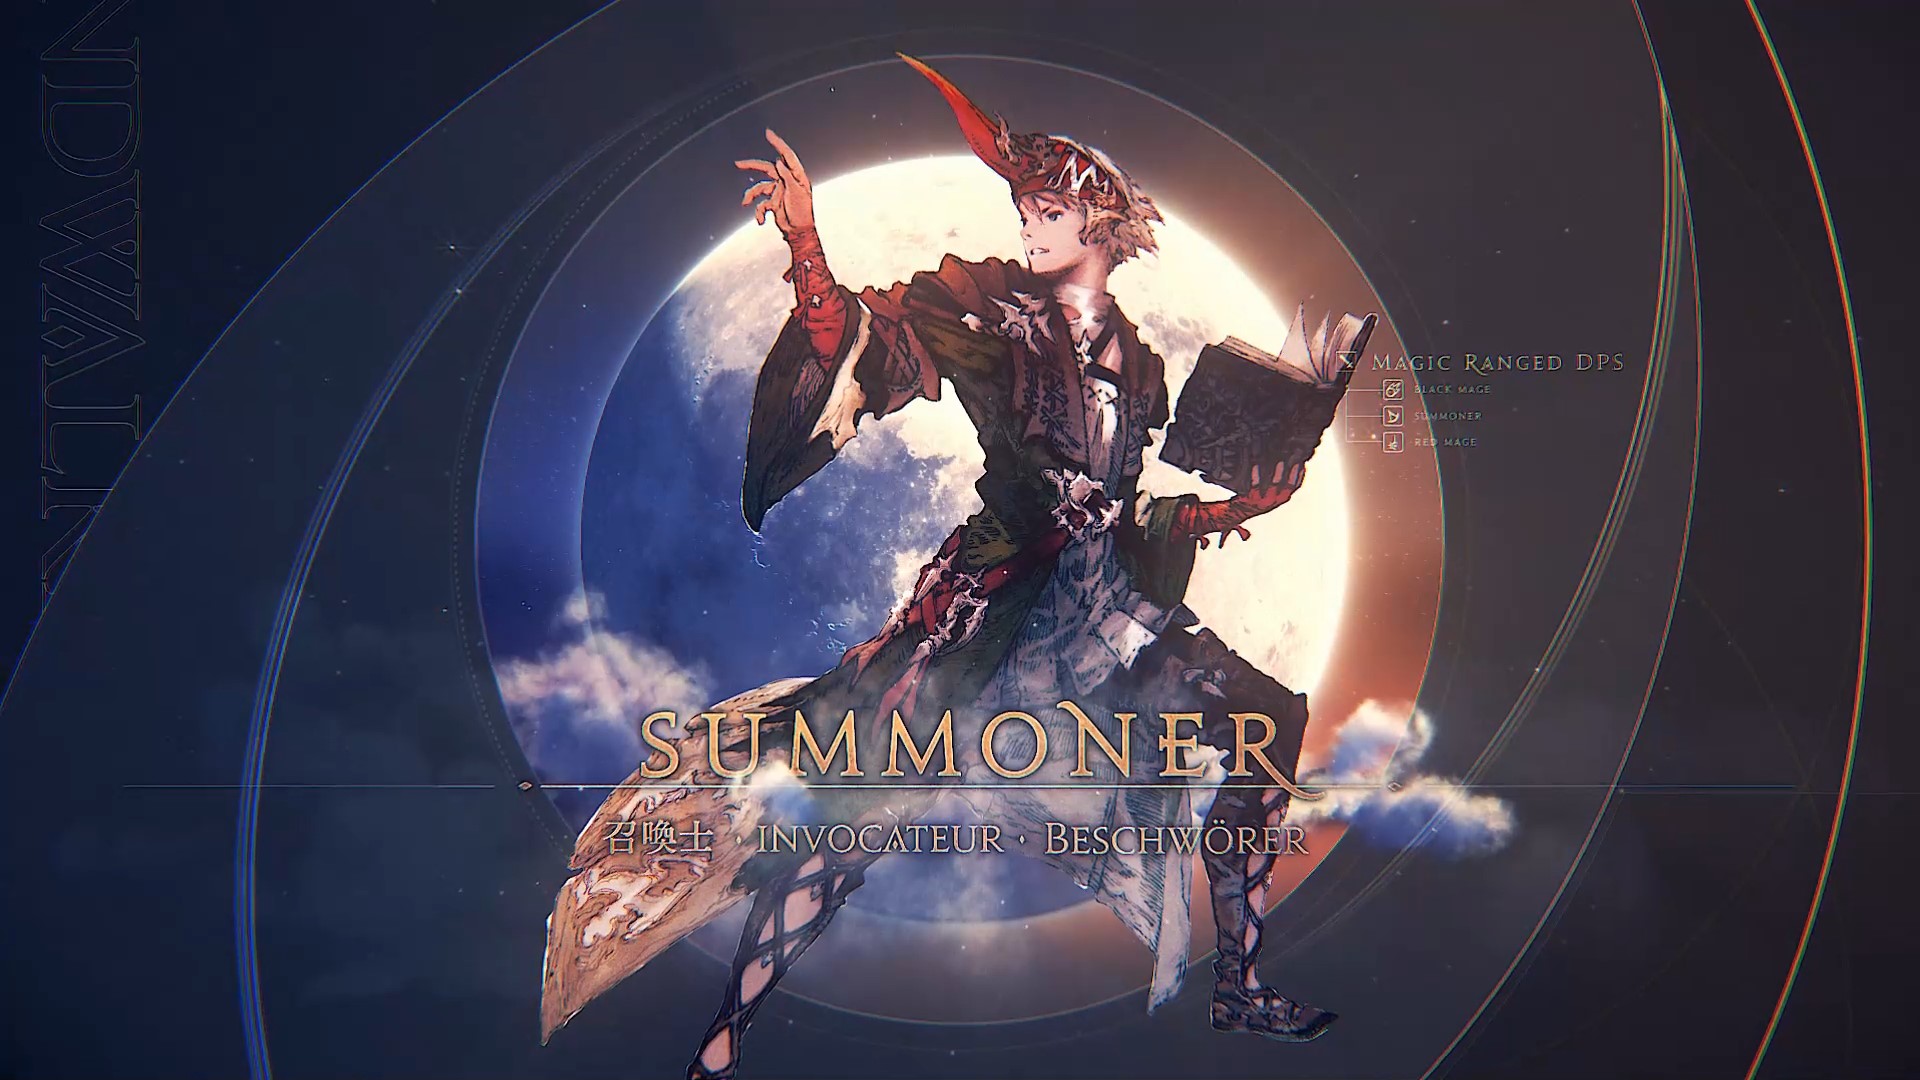 Final Fantasy XIV Summoner Guide